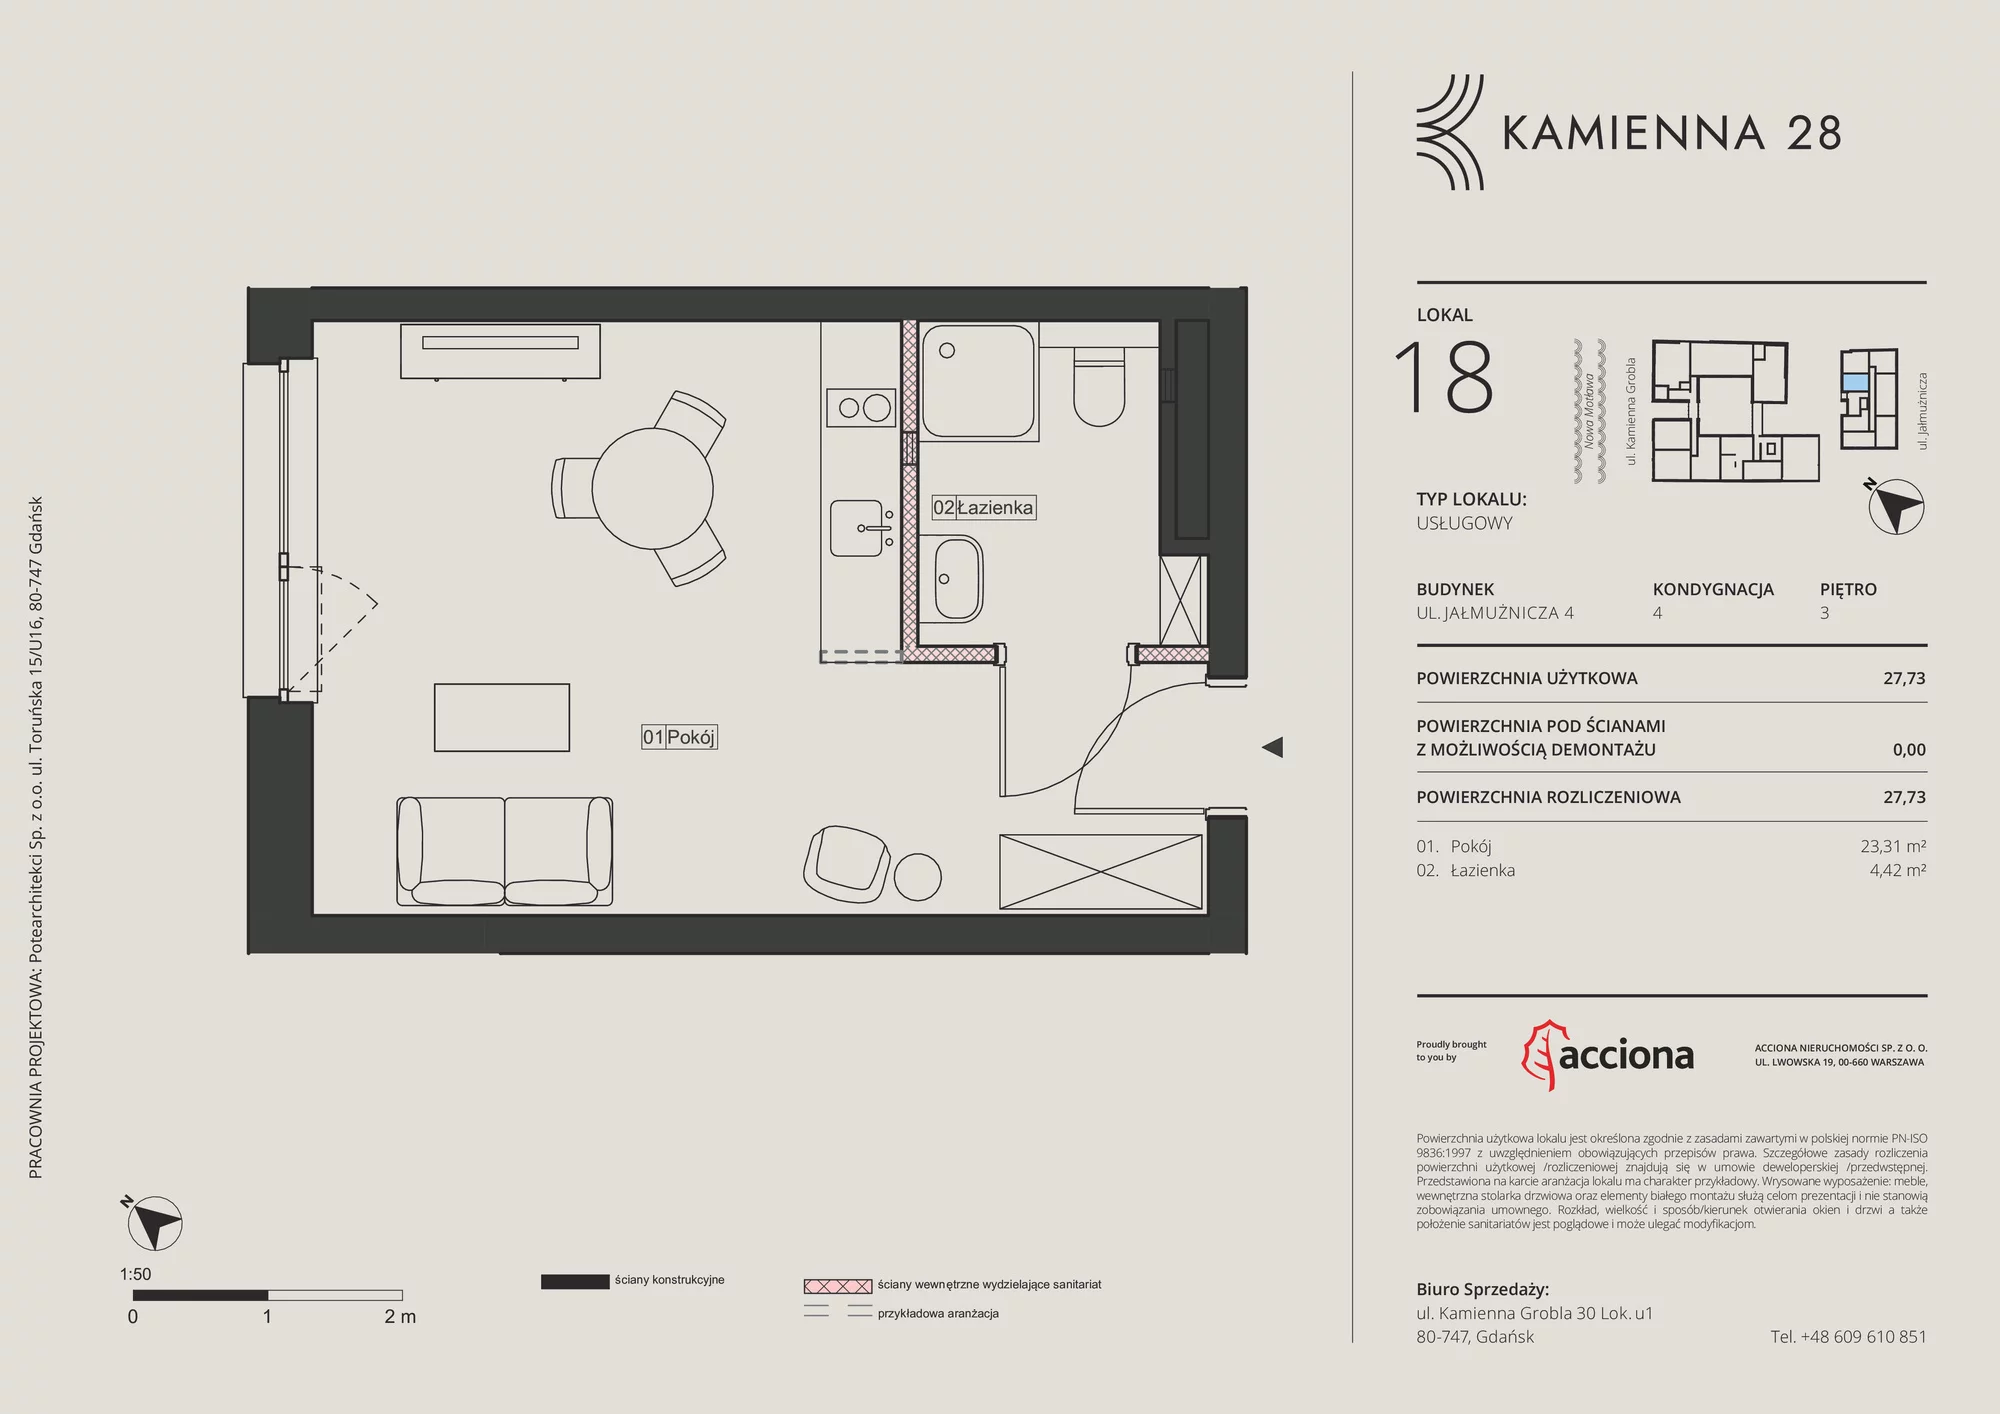 Apartament inwestycyjny 27,73 m², piętro 3, oferta nr 4.18, Kamienna 28 - apartamenty inwestycyjne, Gdańsk, Śródmieście, Dolne Miasto, ul. Jałmużnicza 4